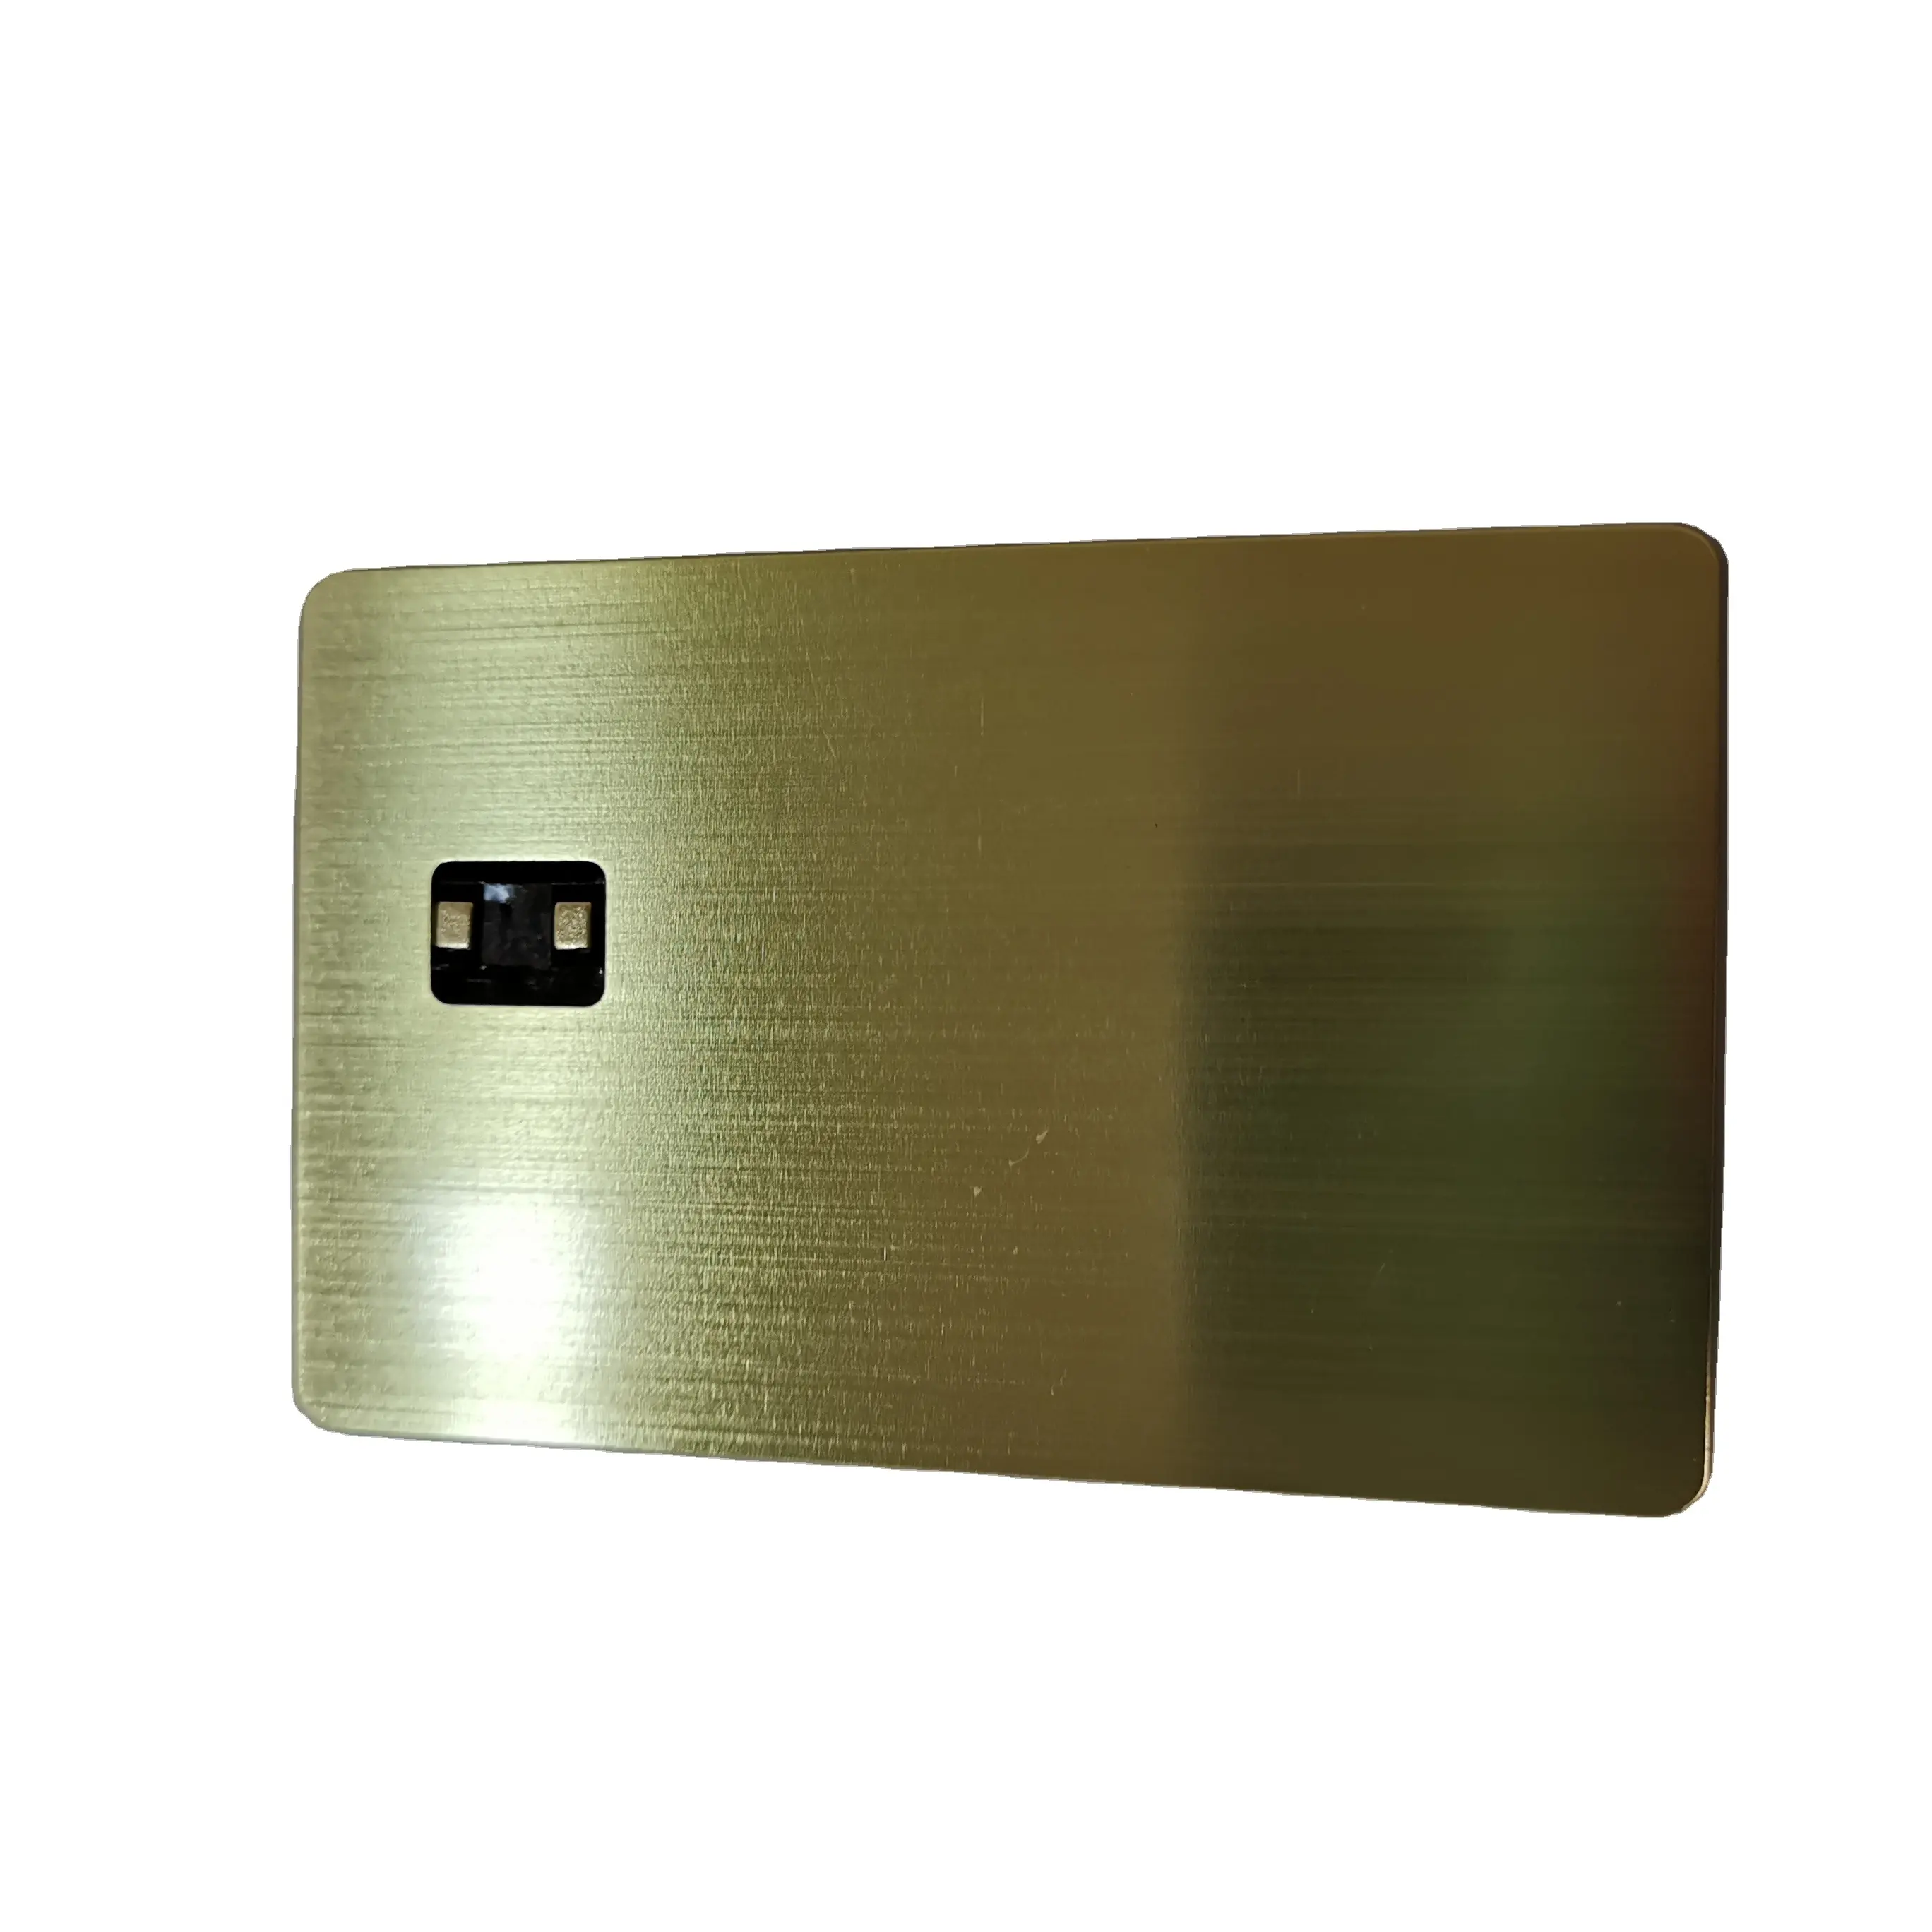 चिप स्लॉट और चुंबकीय पट्टी के साथ एटम पॉस में उपयोग किए जाने वाले संपर्क रहित भुगतान फ़ंक्शन के साथ धातु क्रेडिट कार्ड धातु डेबिट कार्ड